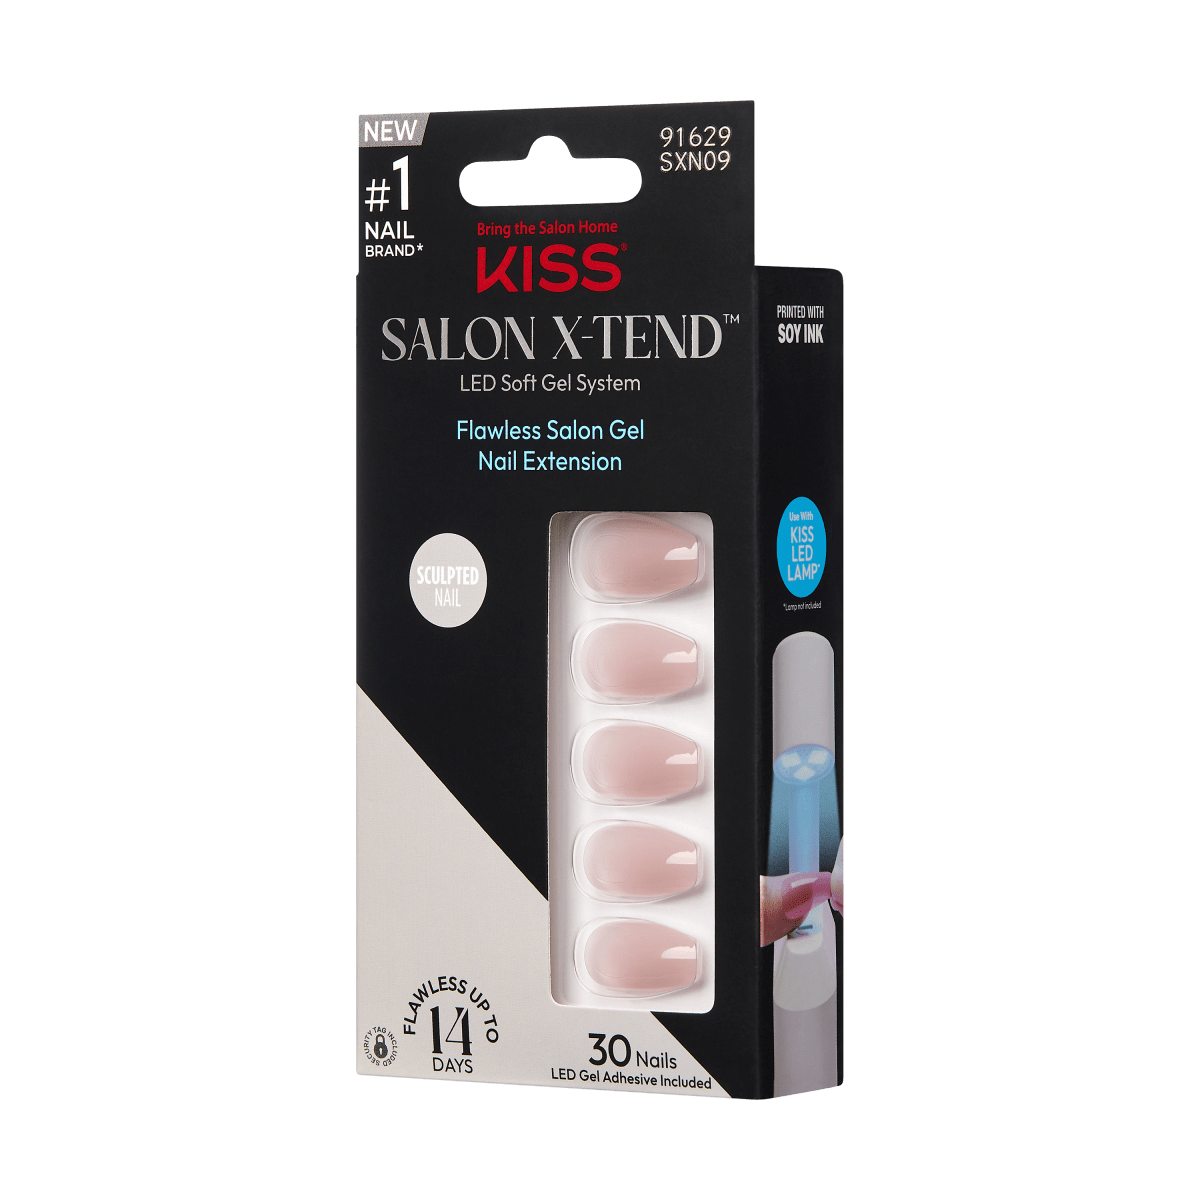 KISS Salon X-tend Color Gel Nails - Change It